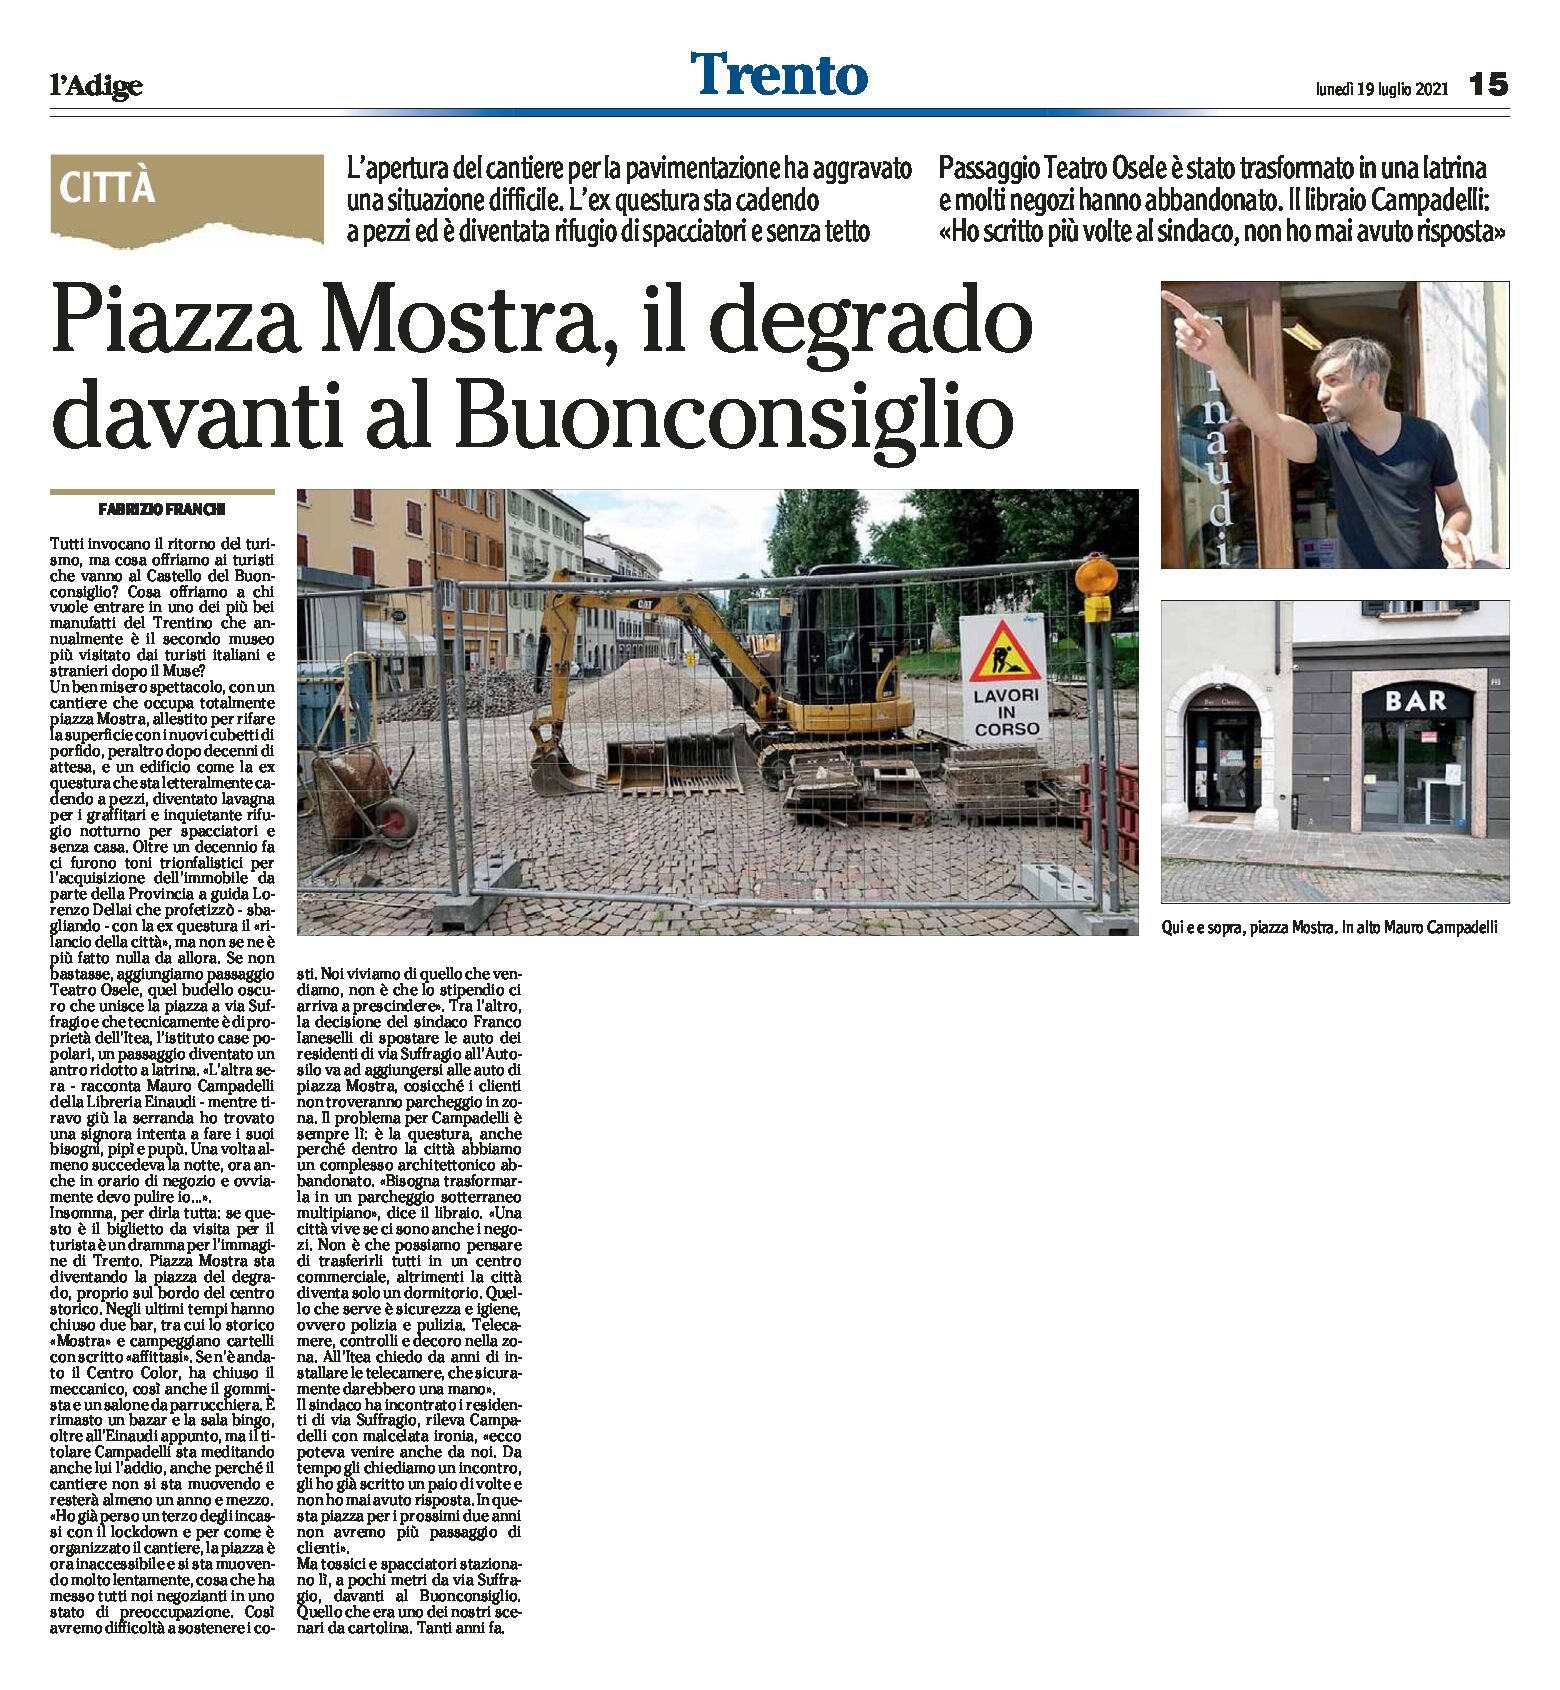 Trento, piazza Mostra: il degrado davanti al Castello del Buonconsiglio